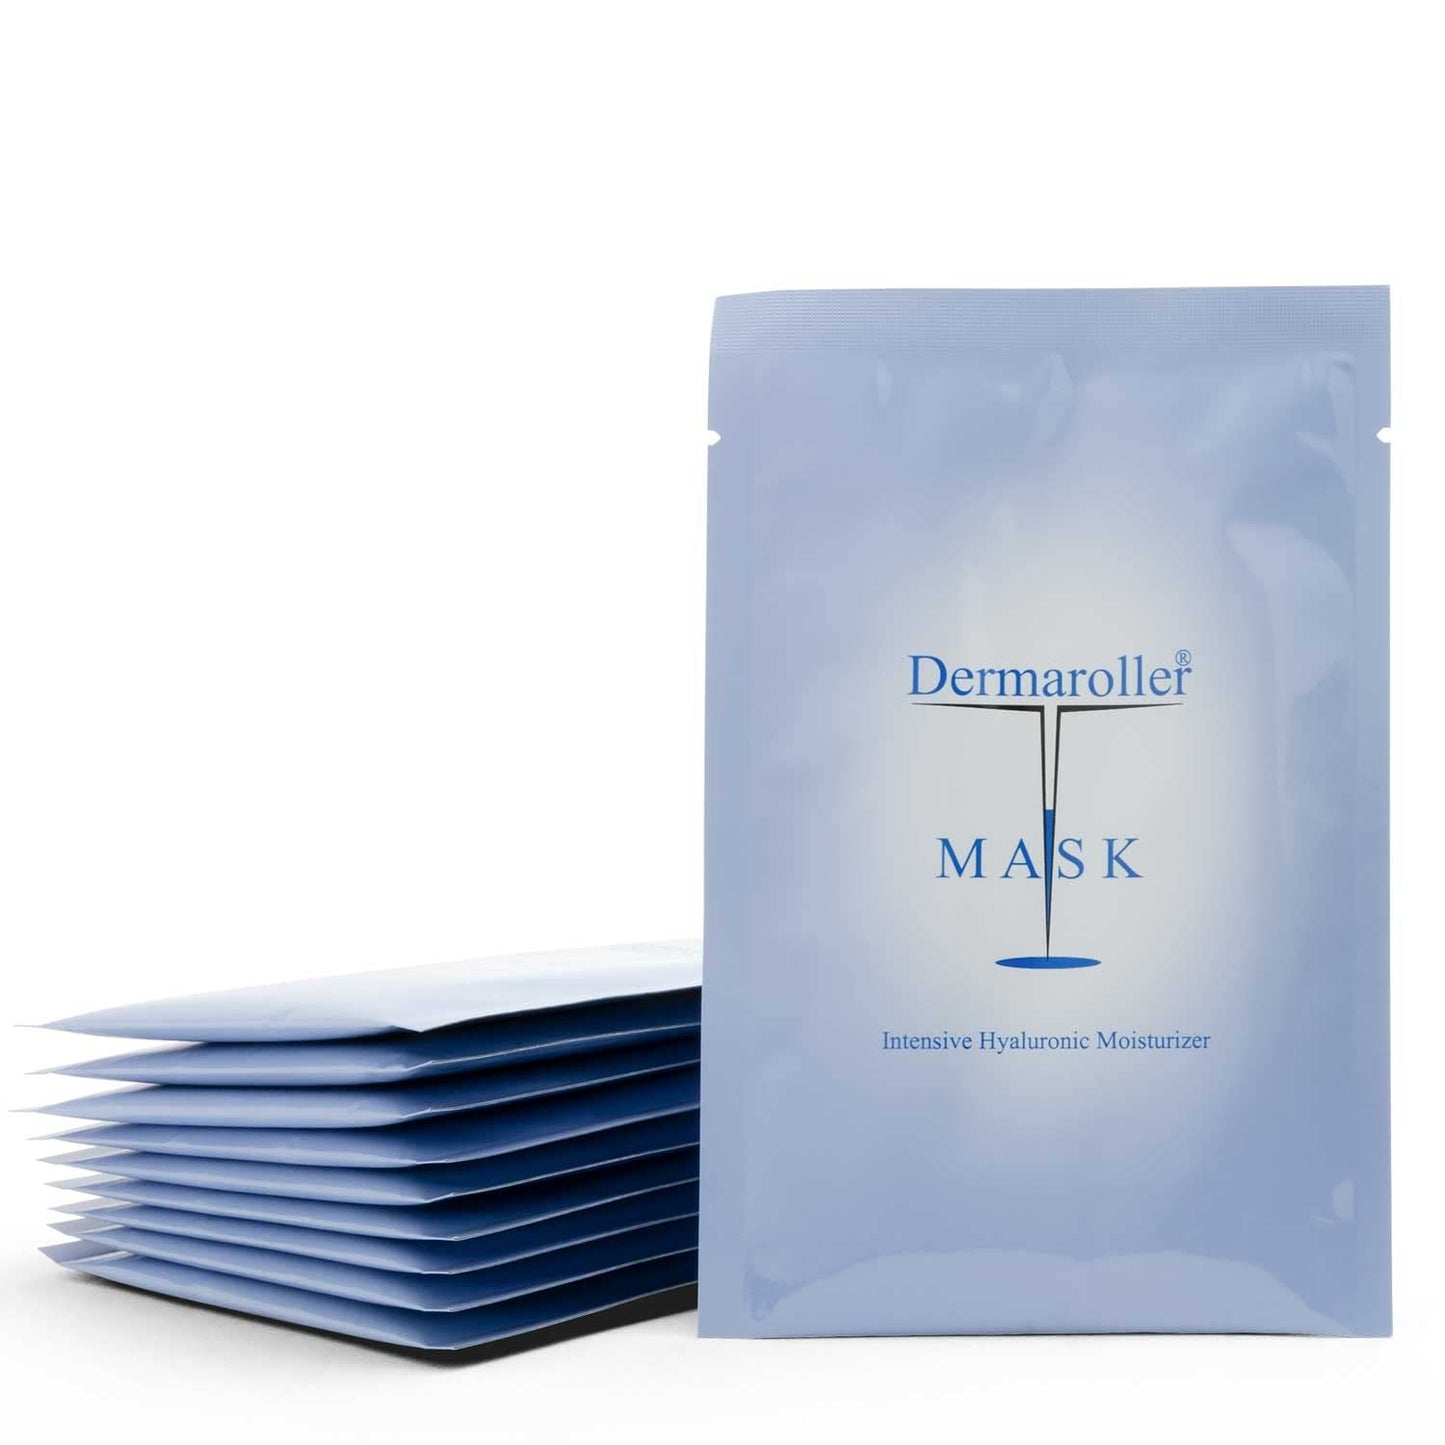 【Super Value Triple Pack】Silk Face Masks Intensive Hyaluronic Acid Moisturizer